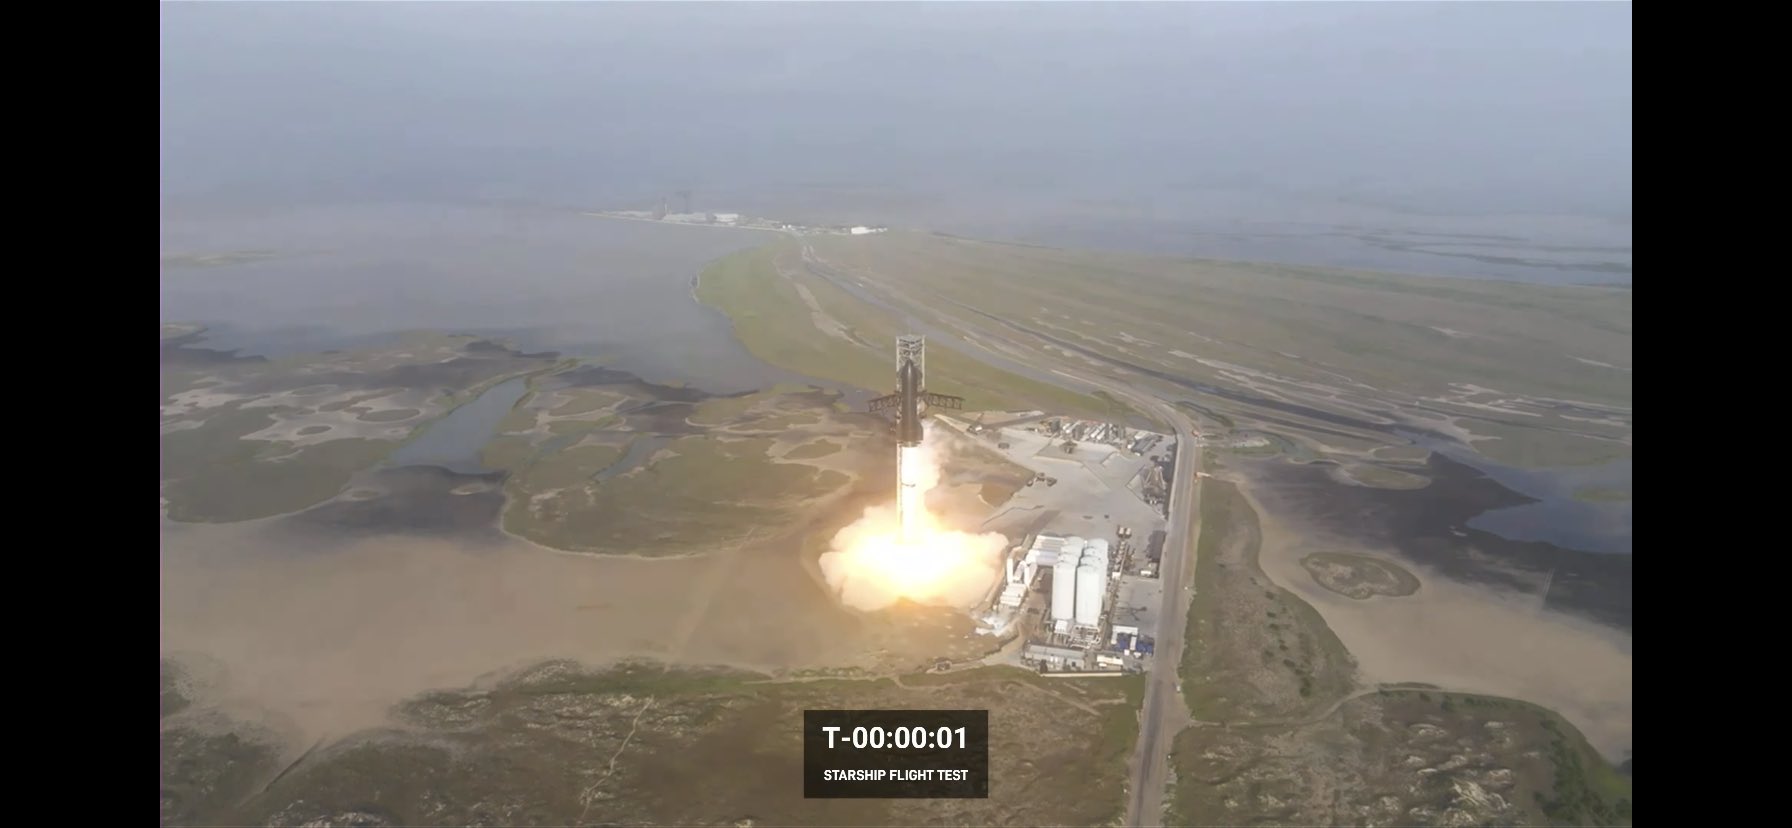 «Starship» de SpaceX se desintegra tras despegue